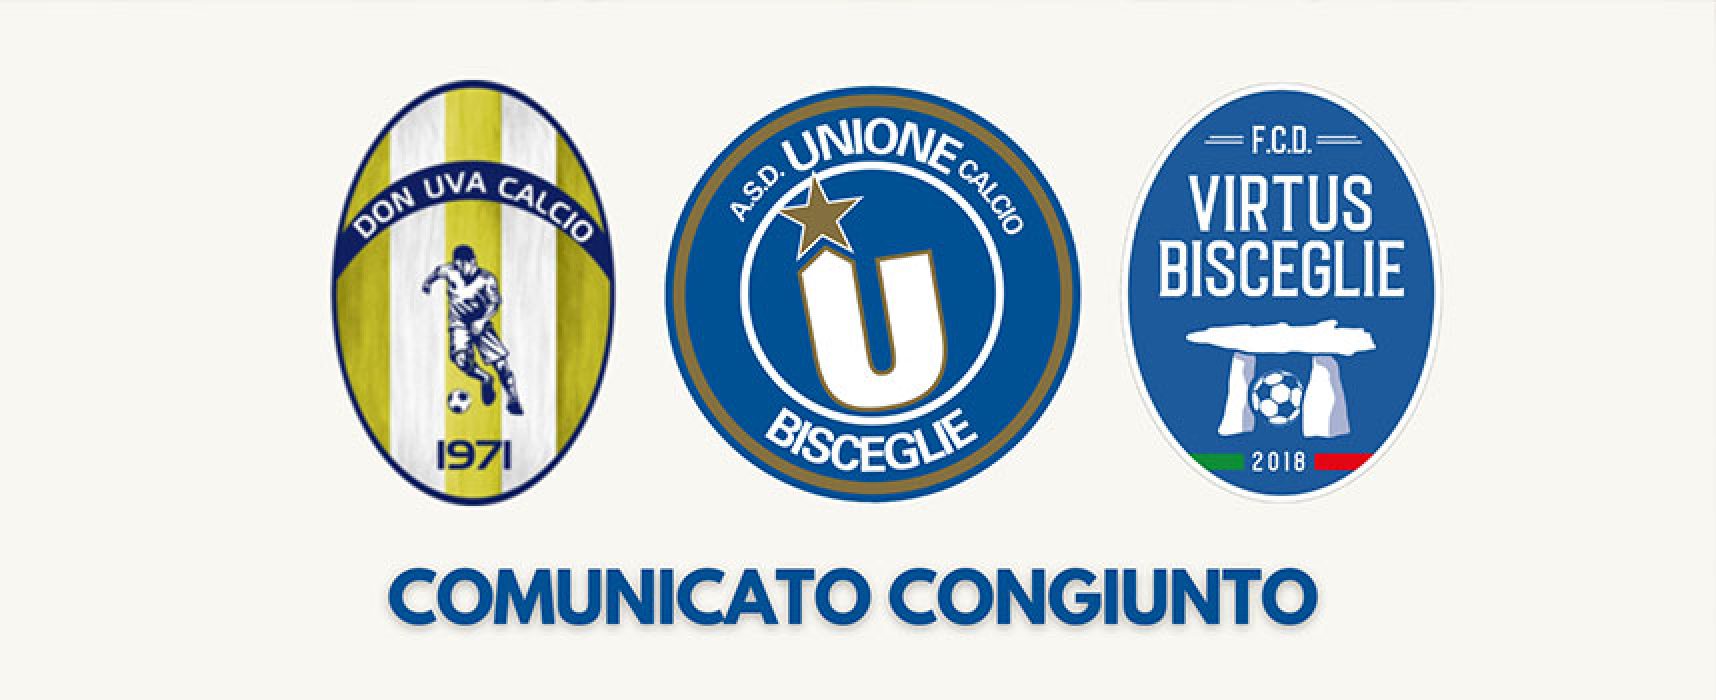 Don Uva, Unione Calcio e Virtus Bisceglie: nuova partnership a livello di settore giovanile